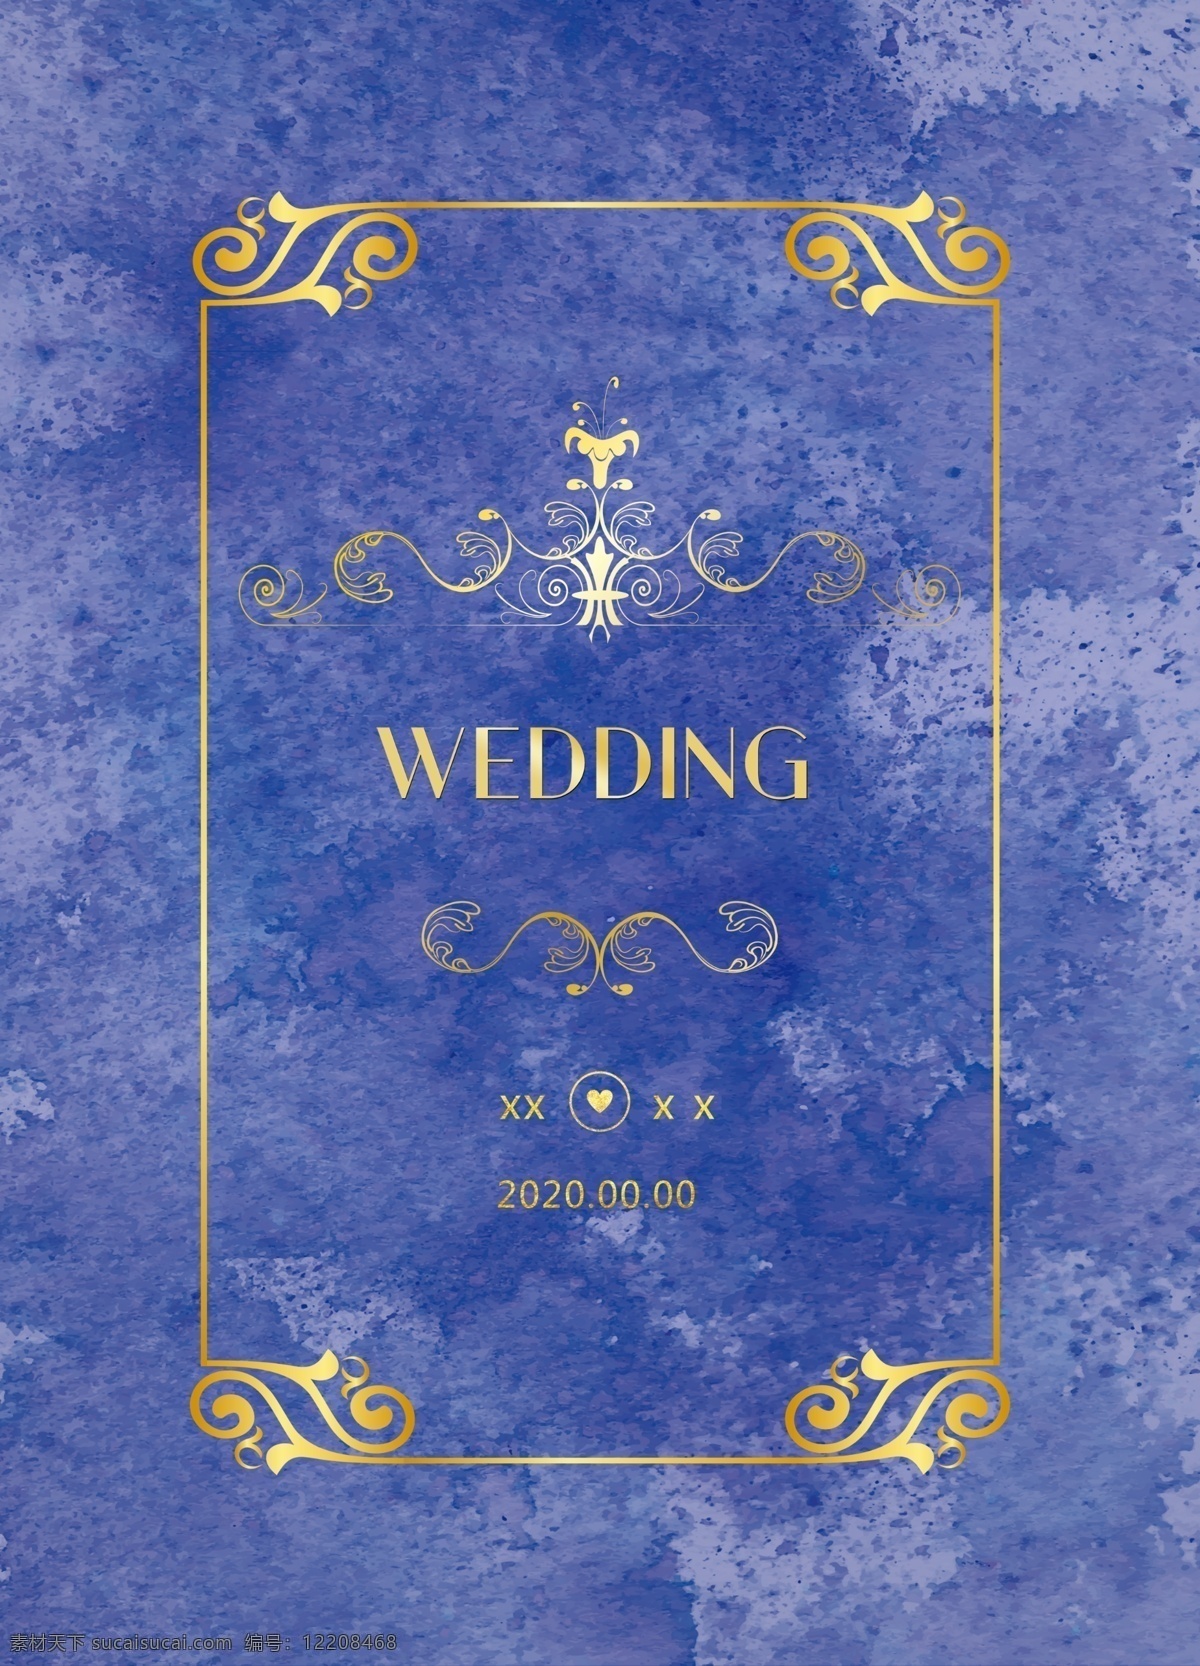 蓝紫色 婚礼 背景 蓝紫婚礼背景 蓝色婚礼 婚礼背景 紫色婚礼 水彩婚礼 婚礼素材 分层